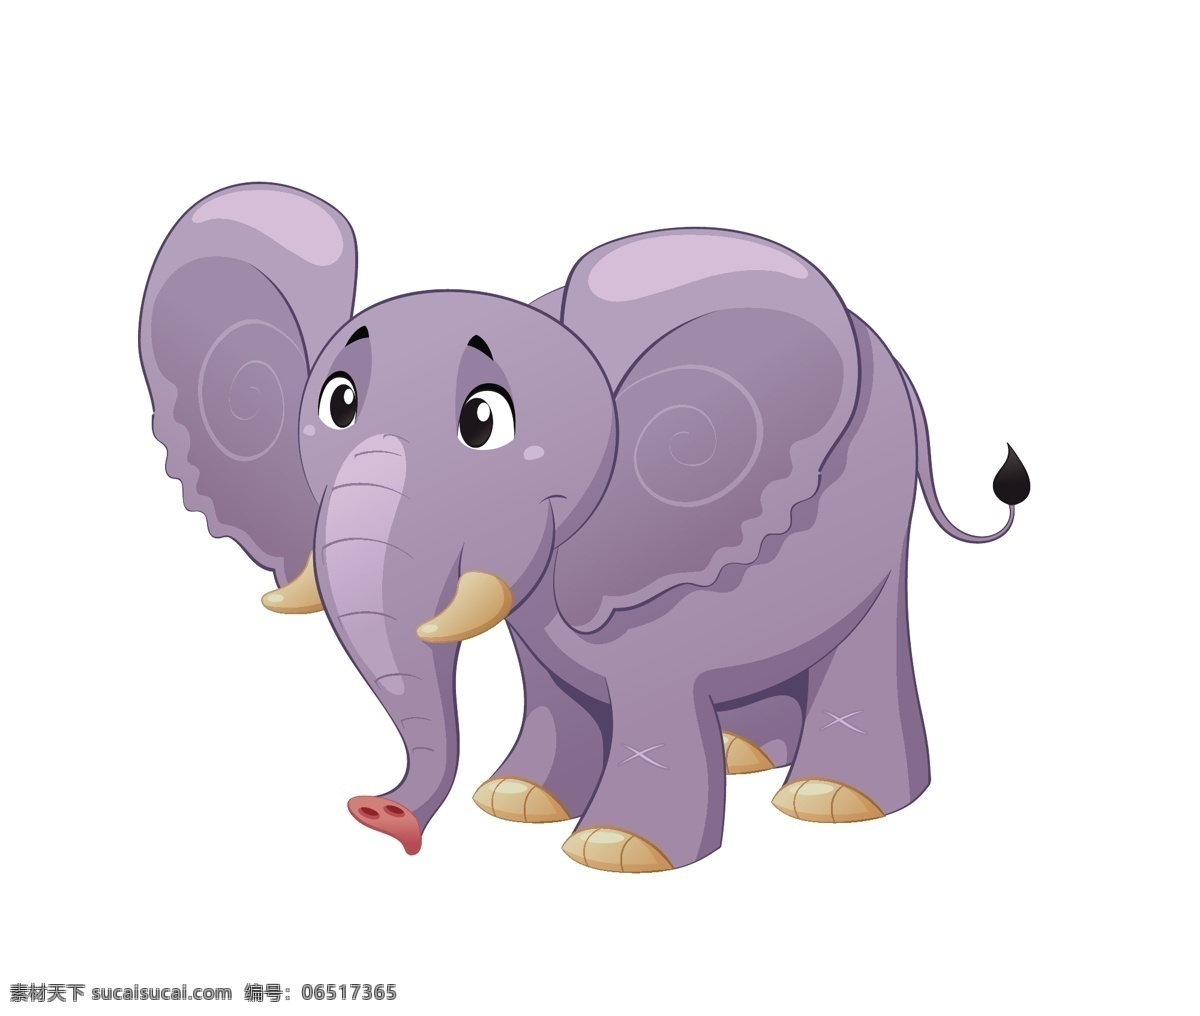 矢量 森林 王 大象 卡通 动物 素材图片 卡通动物 矢量动物 可爱动物 小动物 卡通元素 野生动物 卡通素材 生物